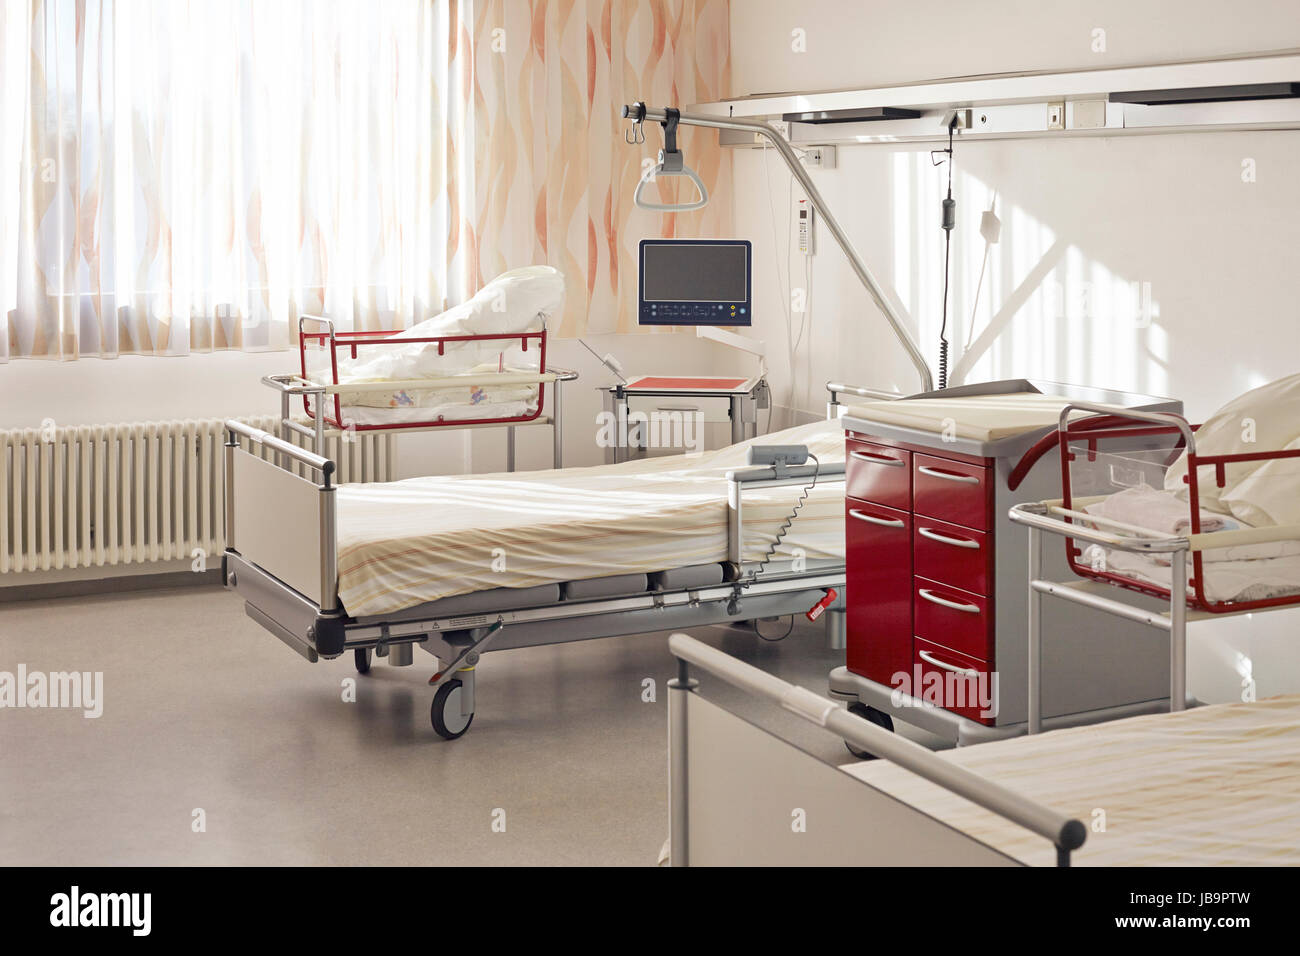 Krankenhaus auf Geburtsstation mit Zimmer und zwei Betten Foto Stock